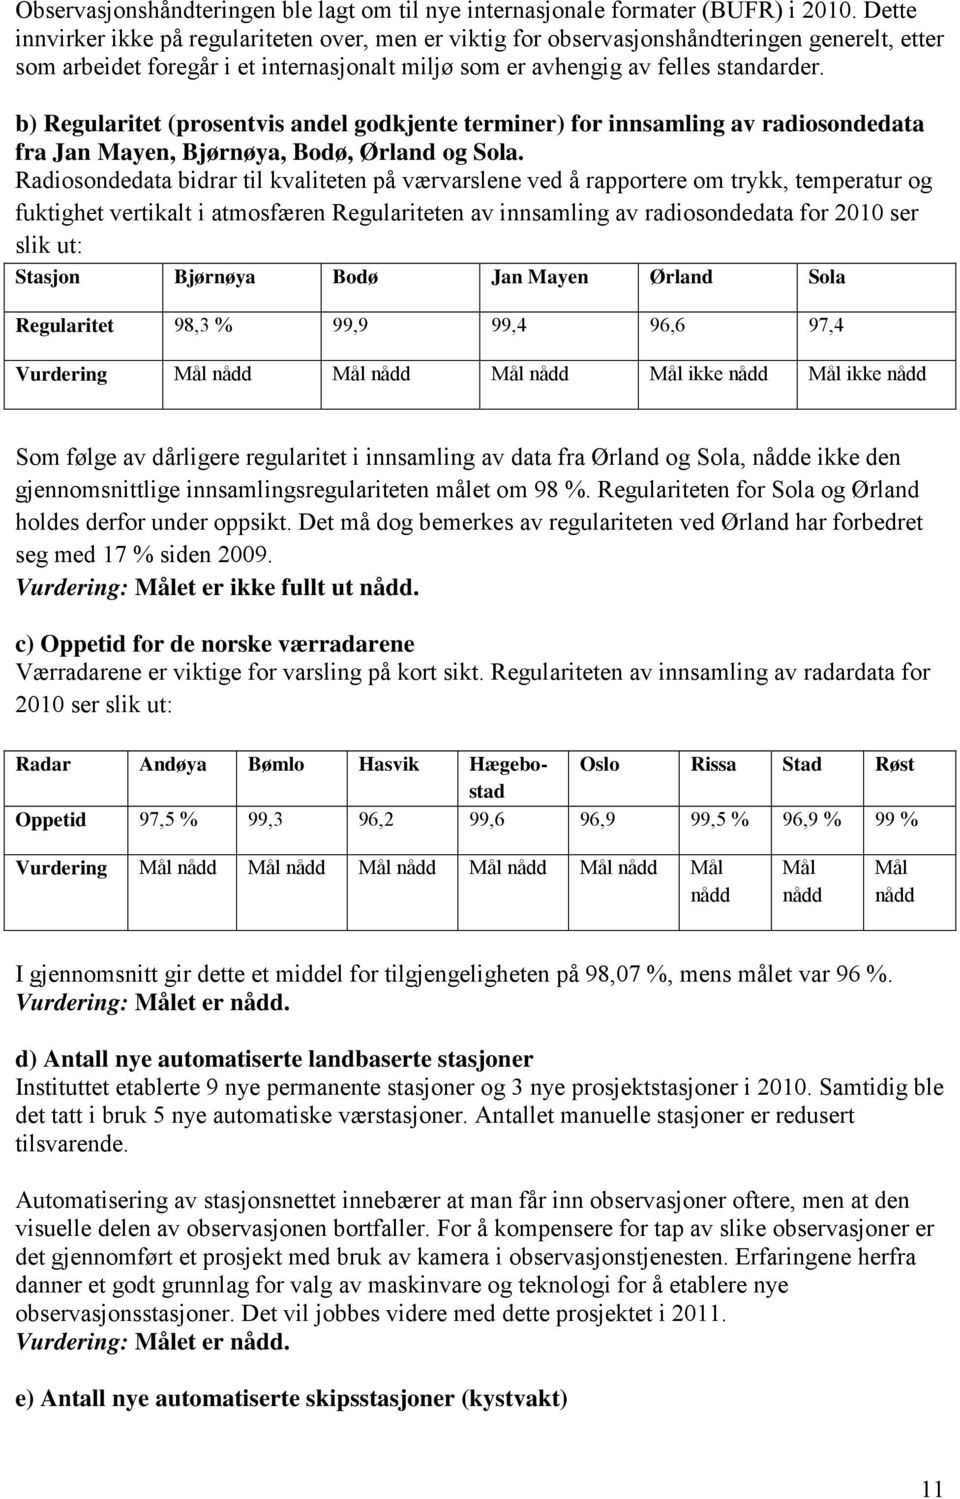 b) Regularitet (prosentvis andel godkjente terminer) for innsamling av radiosondedata fra Jan Mayen, Bjørnøya, Bodø, Ørland og Sola.